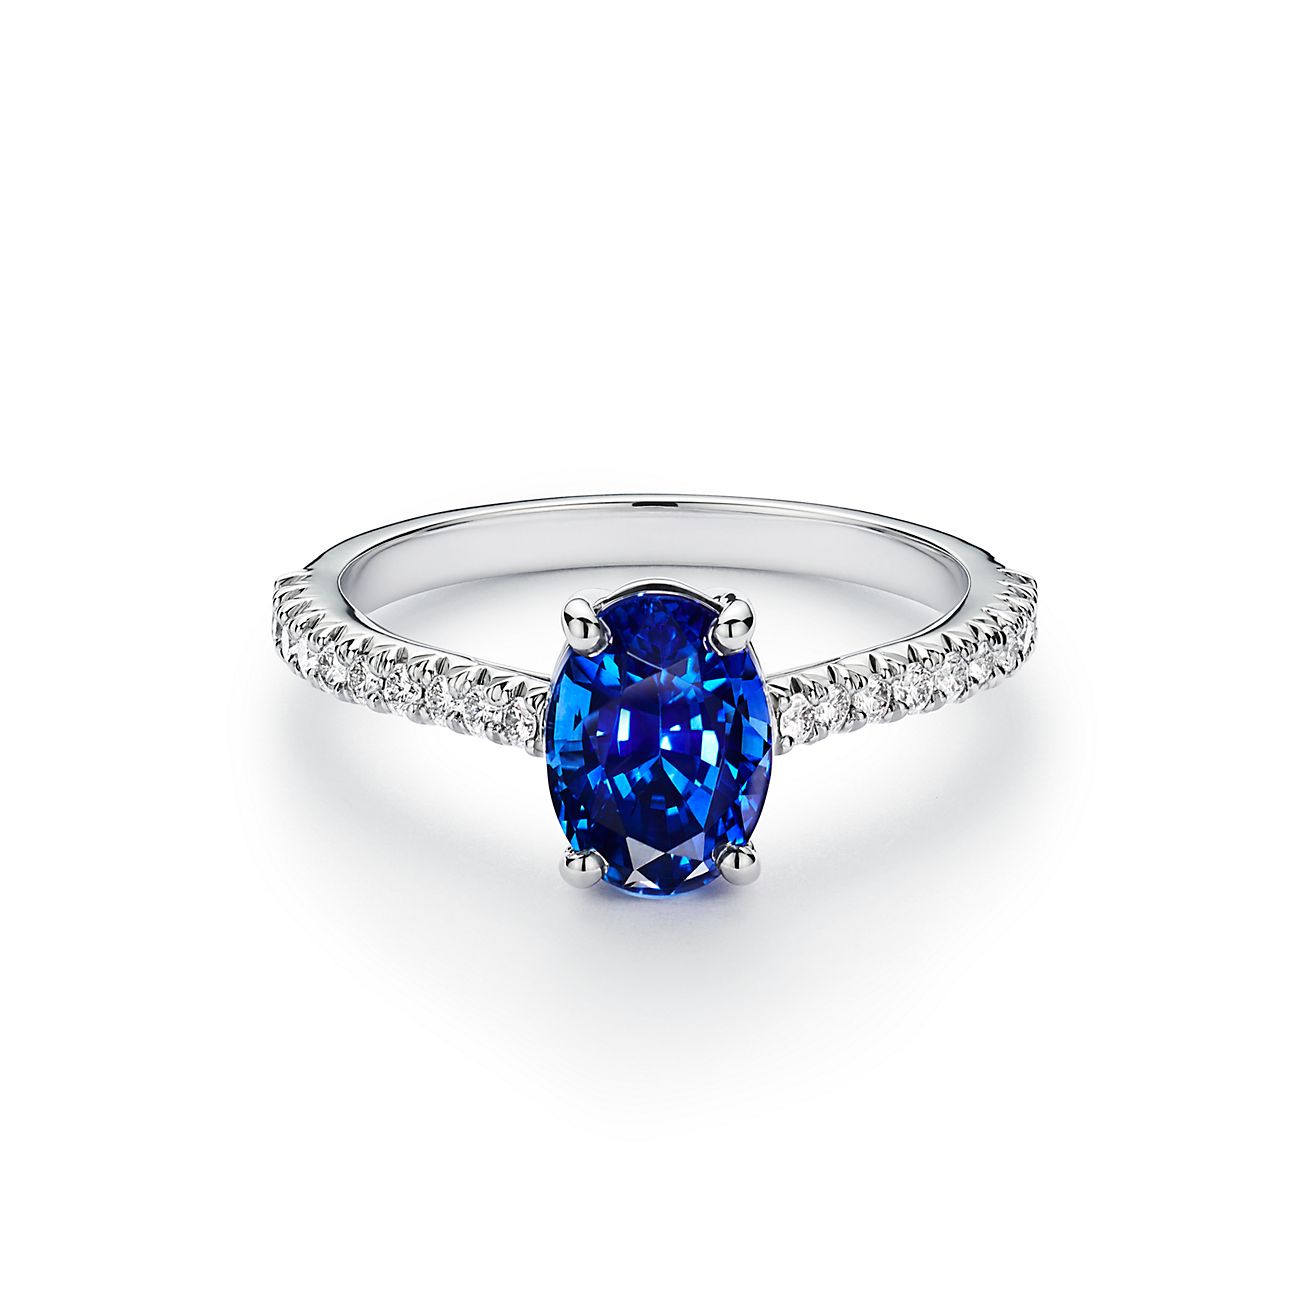 Tiffany Novo® 系列铂金铺镶钻石椭圆形蓝宝石戒指| Tiffany & Co.